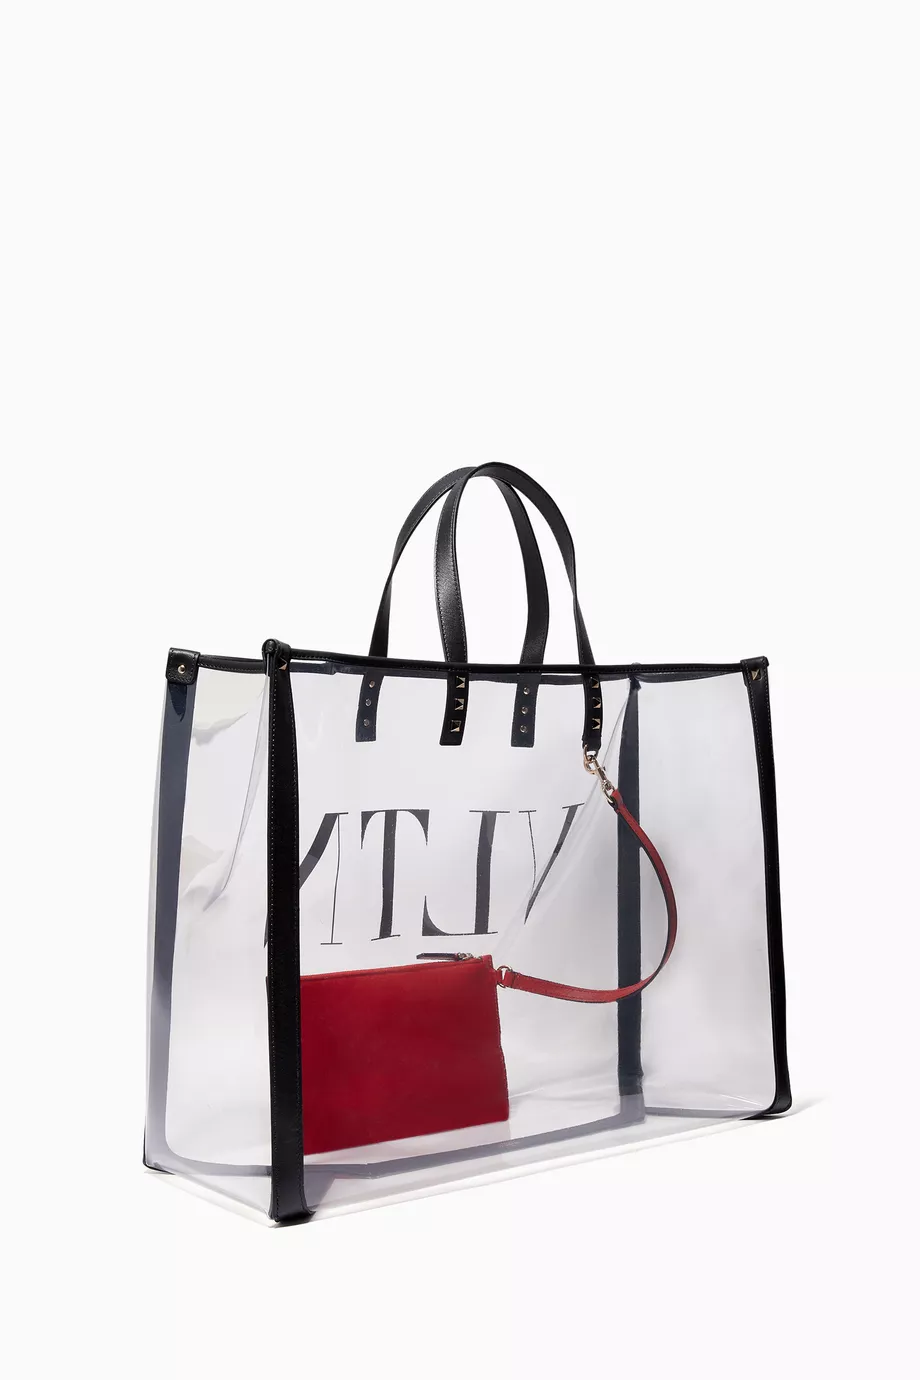 Valentino VLTN Plexy Bag